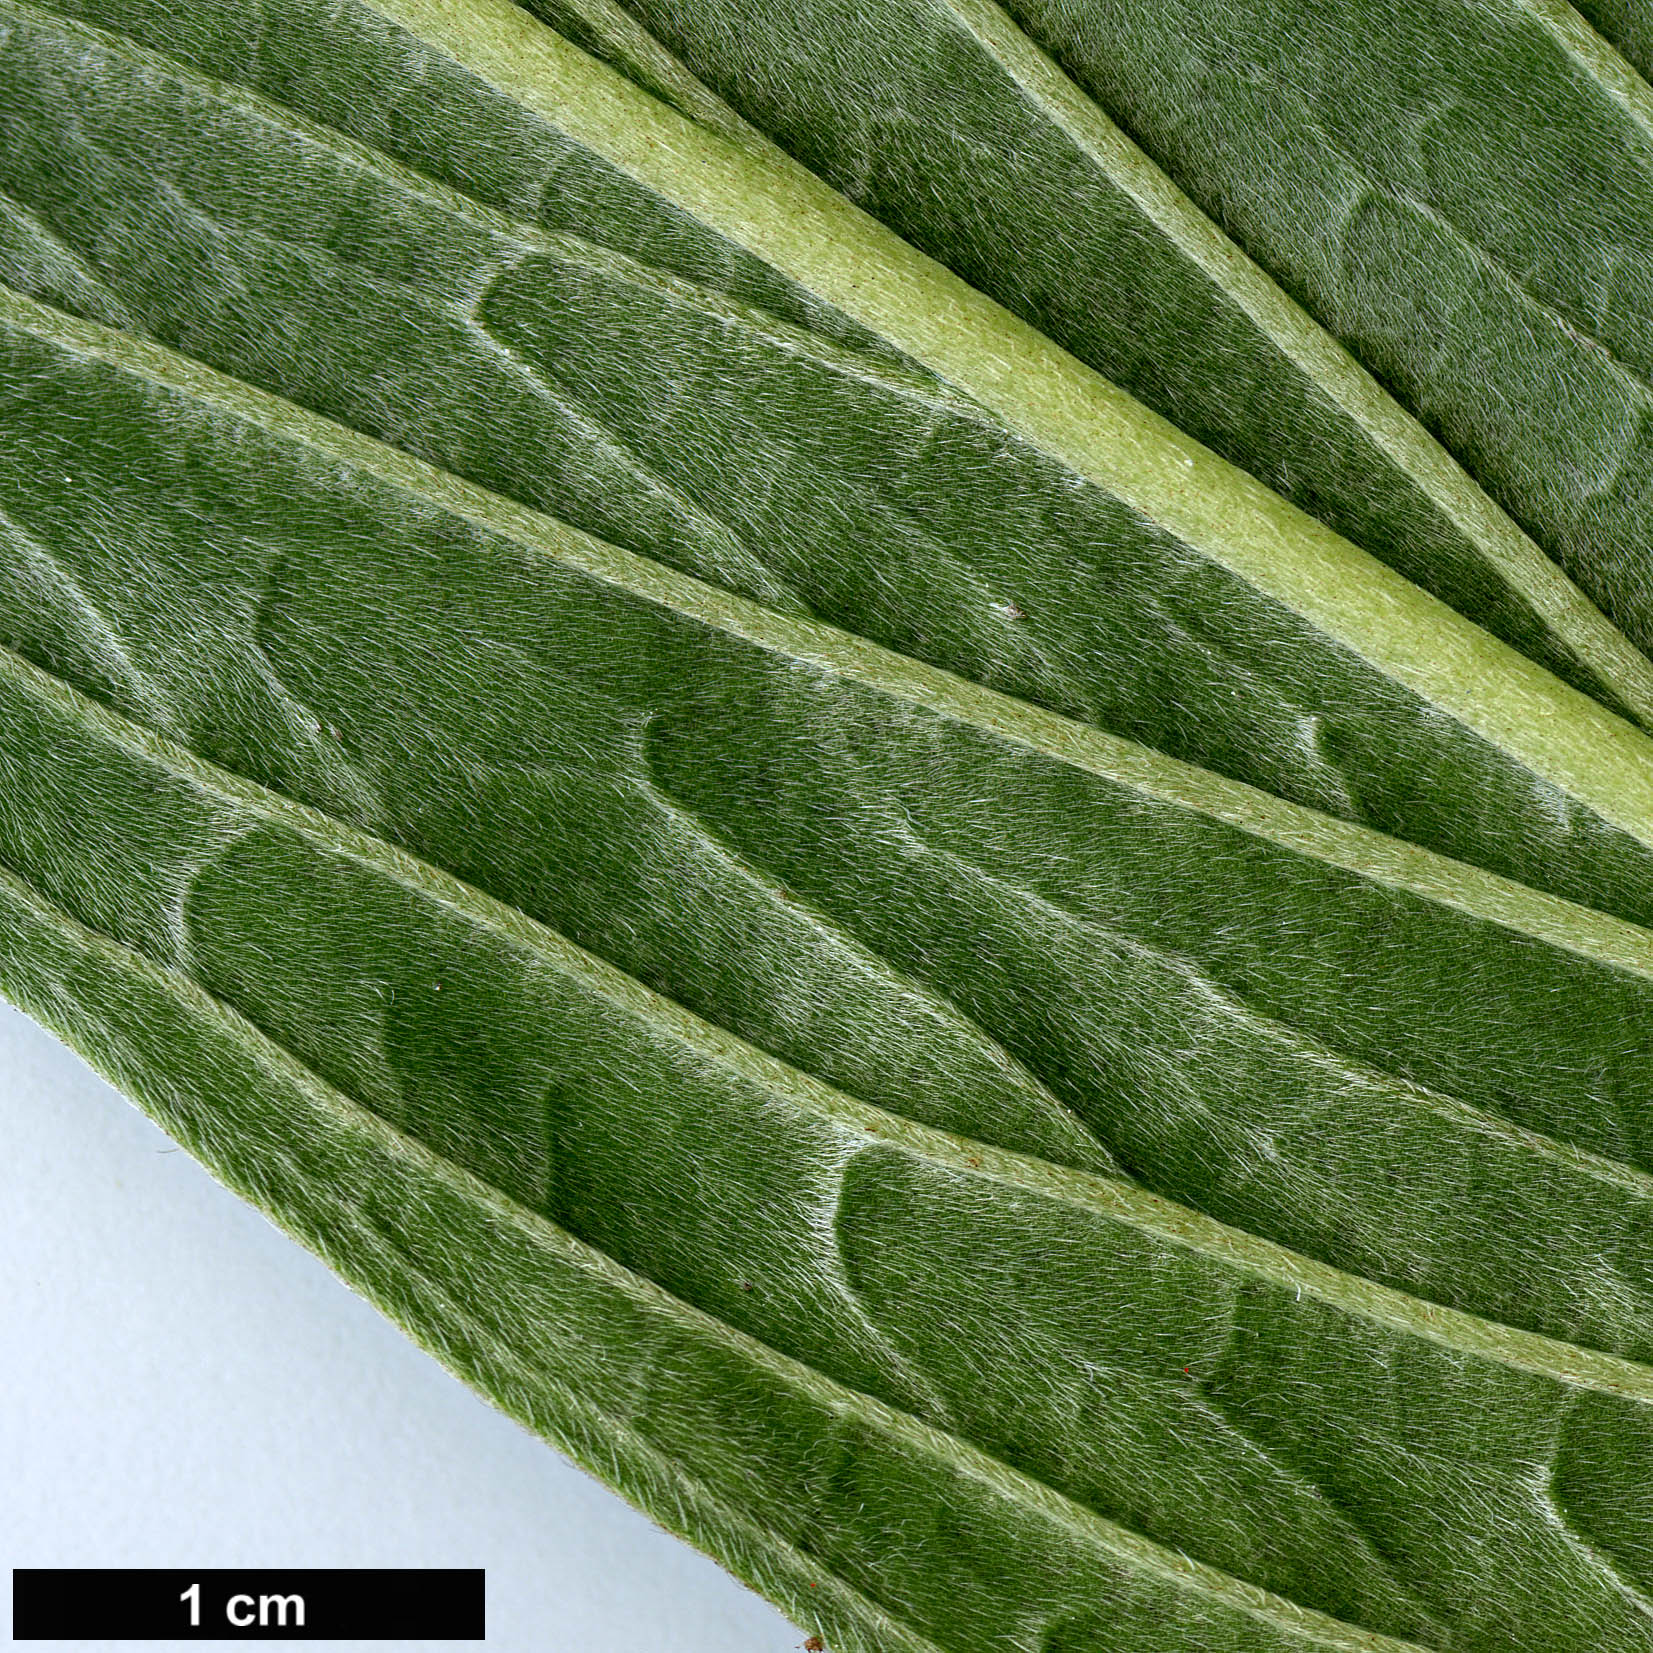 High resolution image: Family: Boraginaceae - Genus: Echium - Taxon: simplex